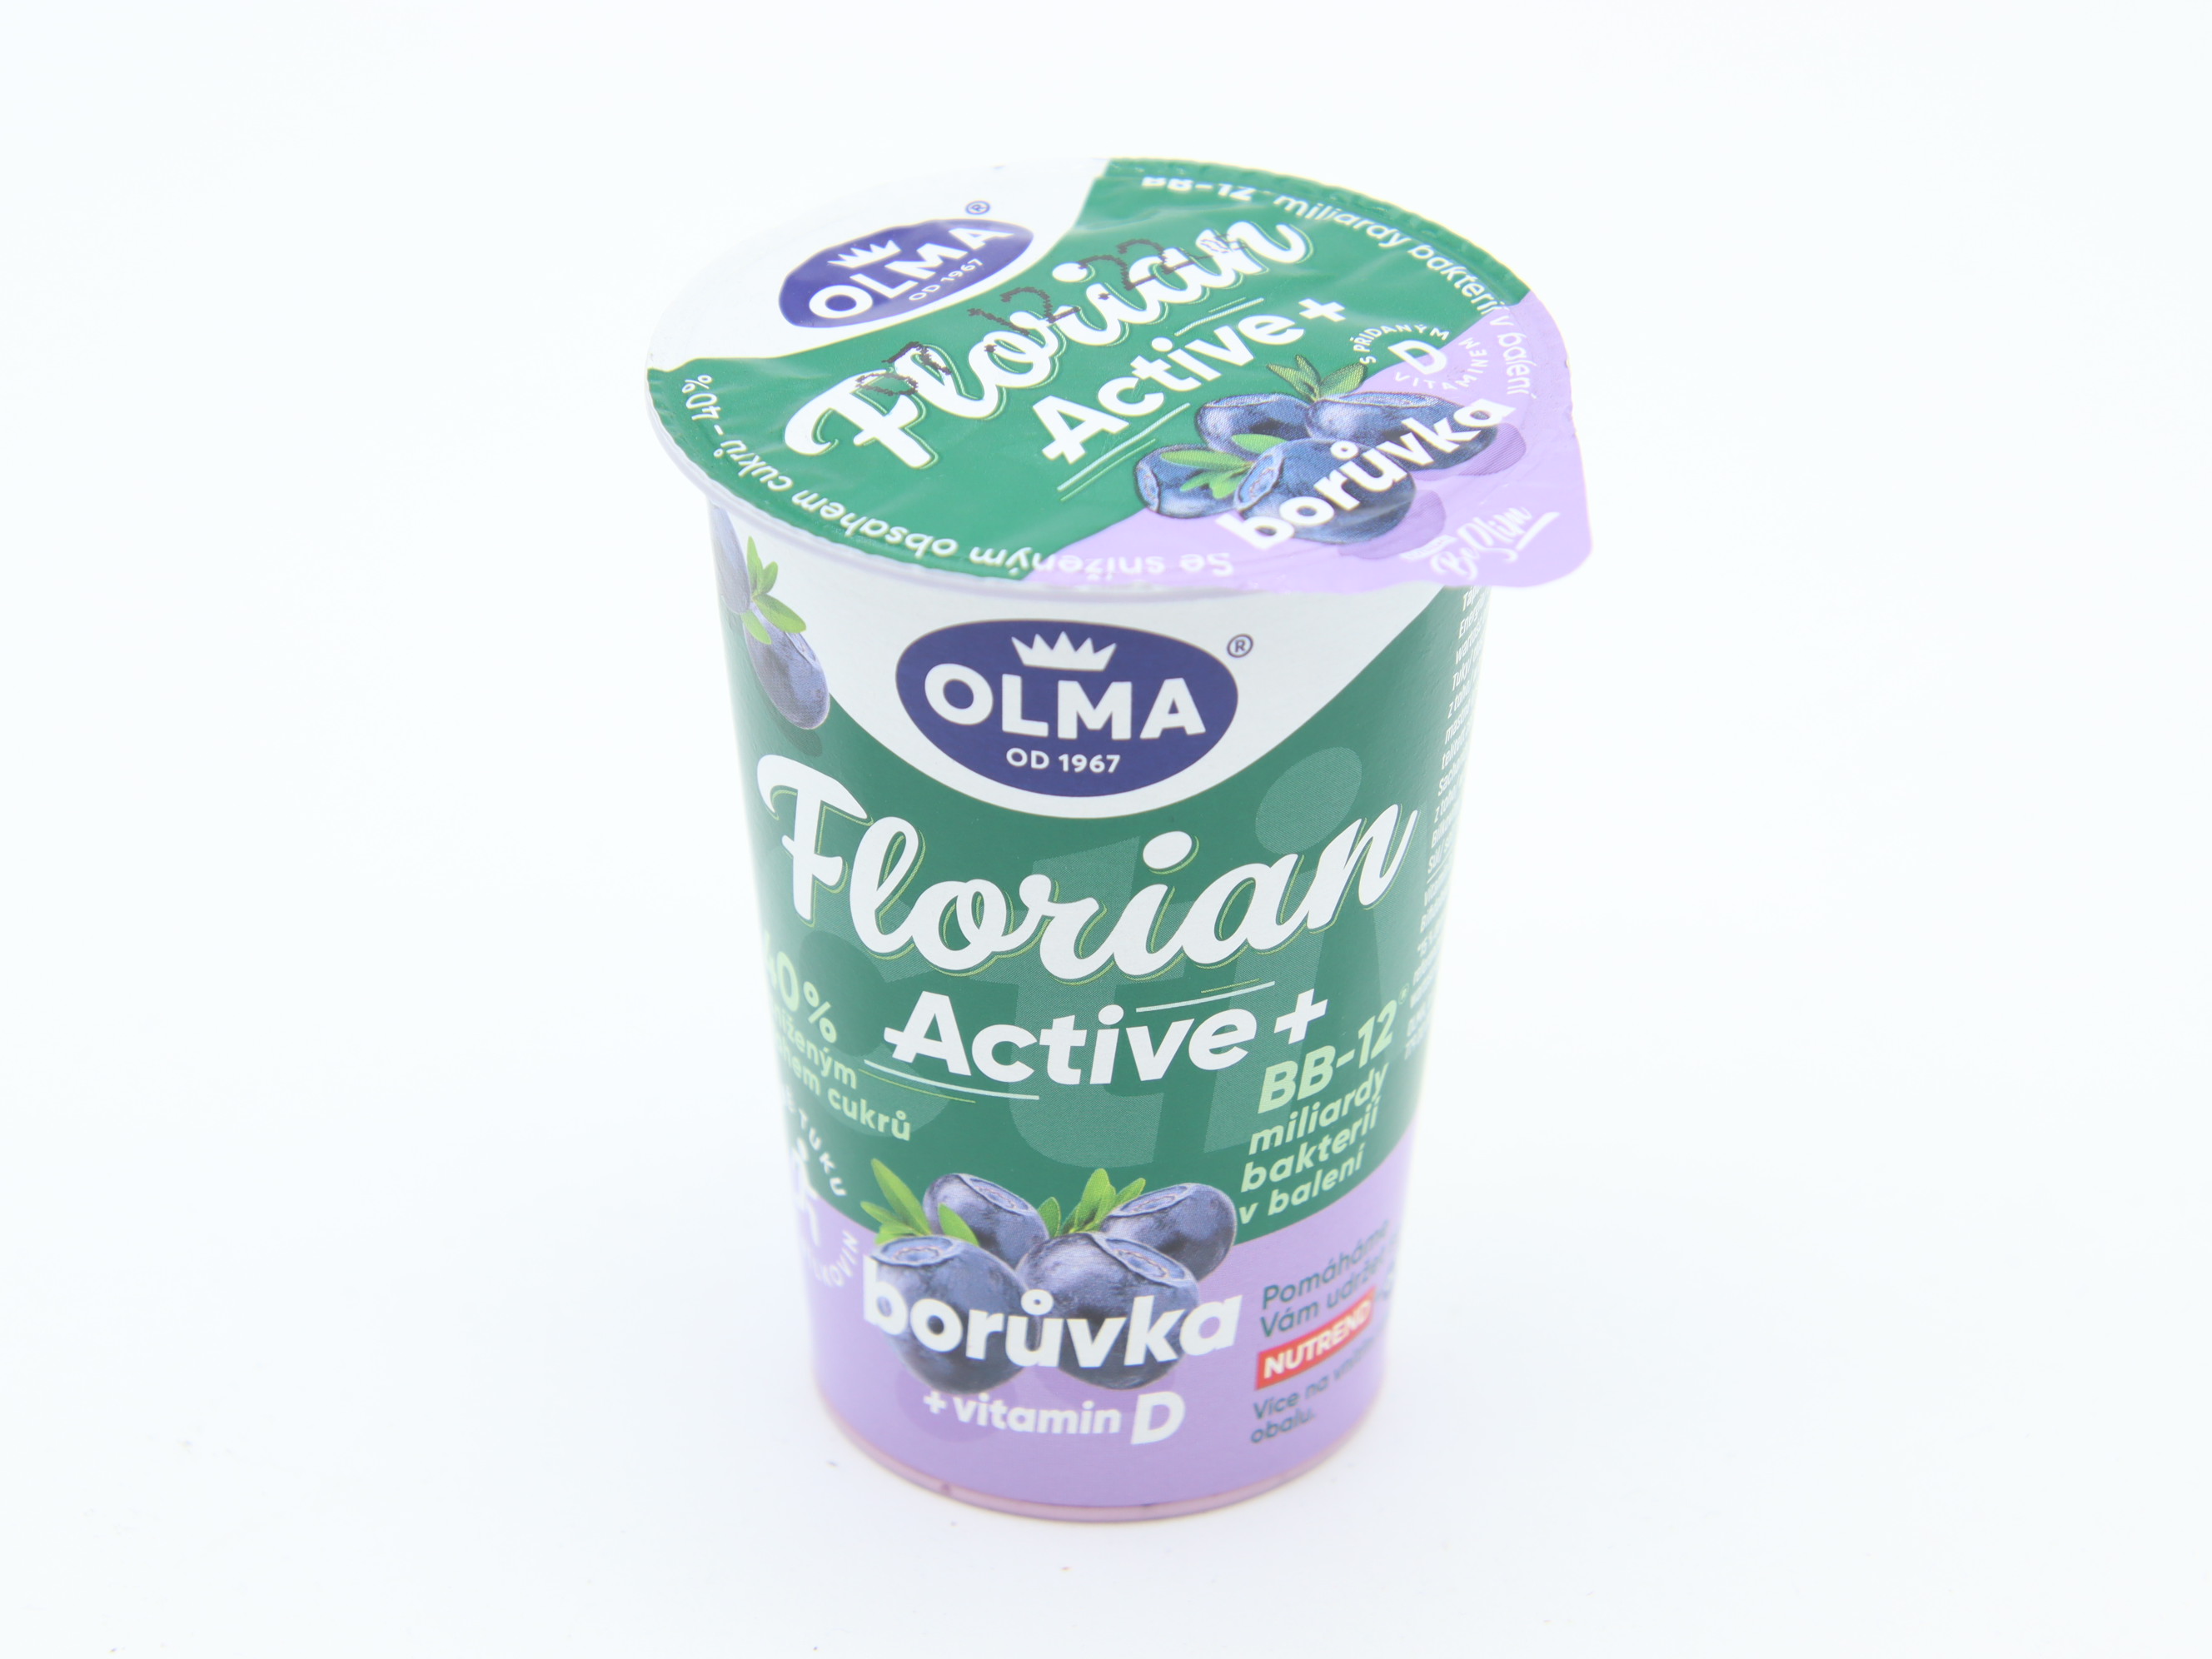 Florian Active jogurt borůvka 145g: Olma